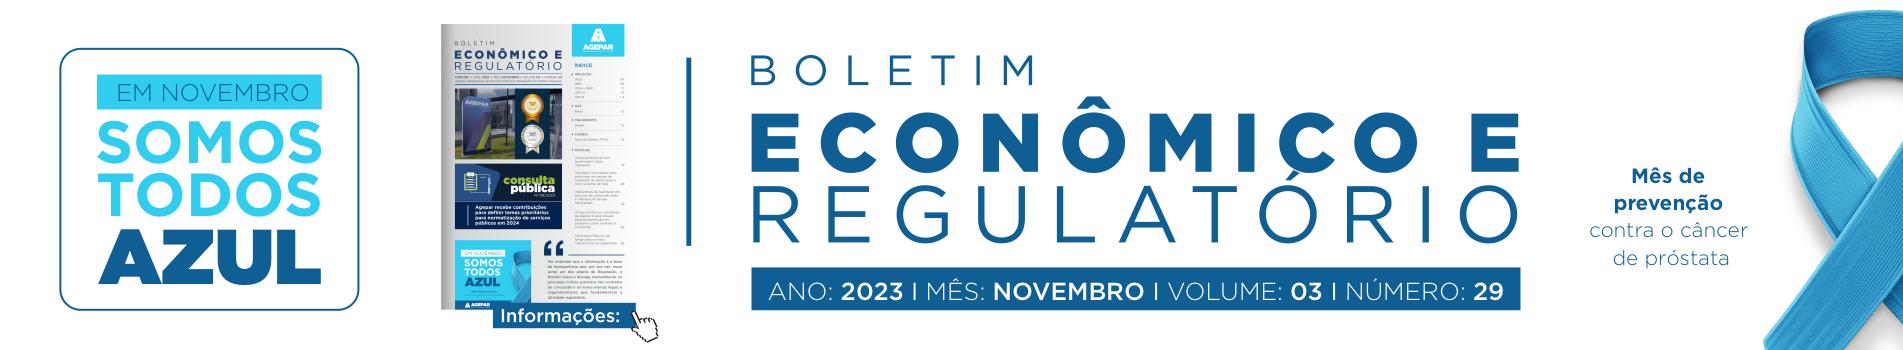 Boletim Econômico e Regulatório - número 29 - novembro 2023